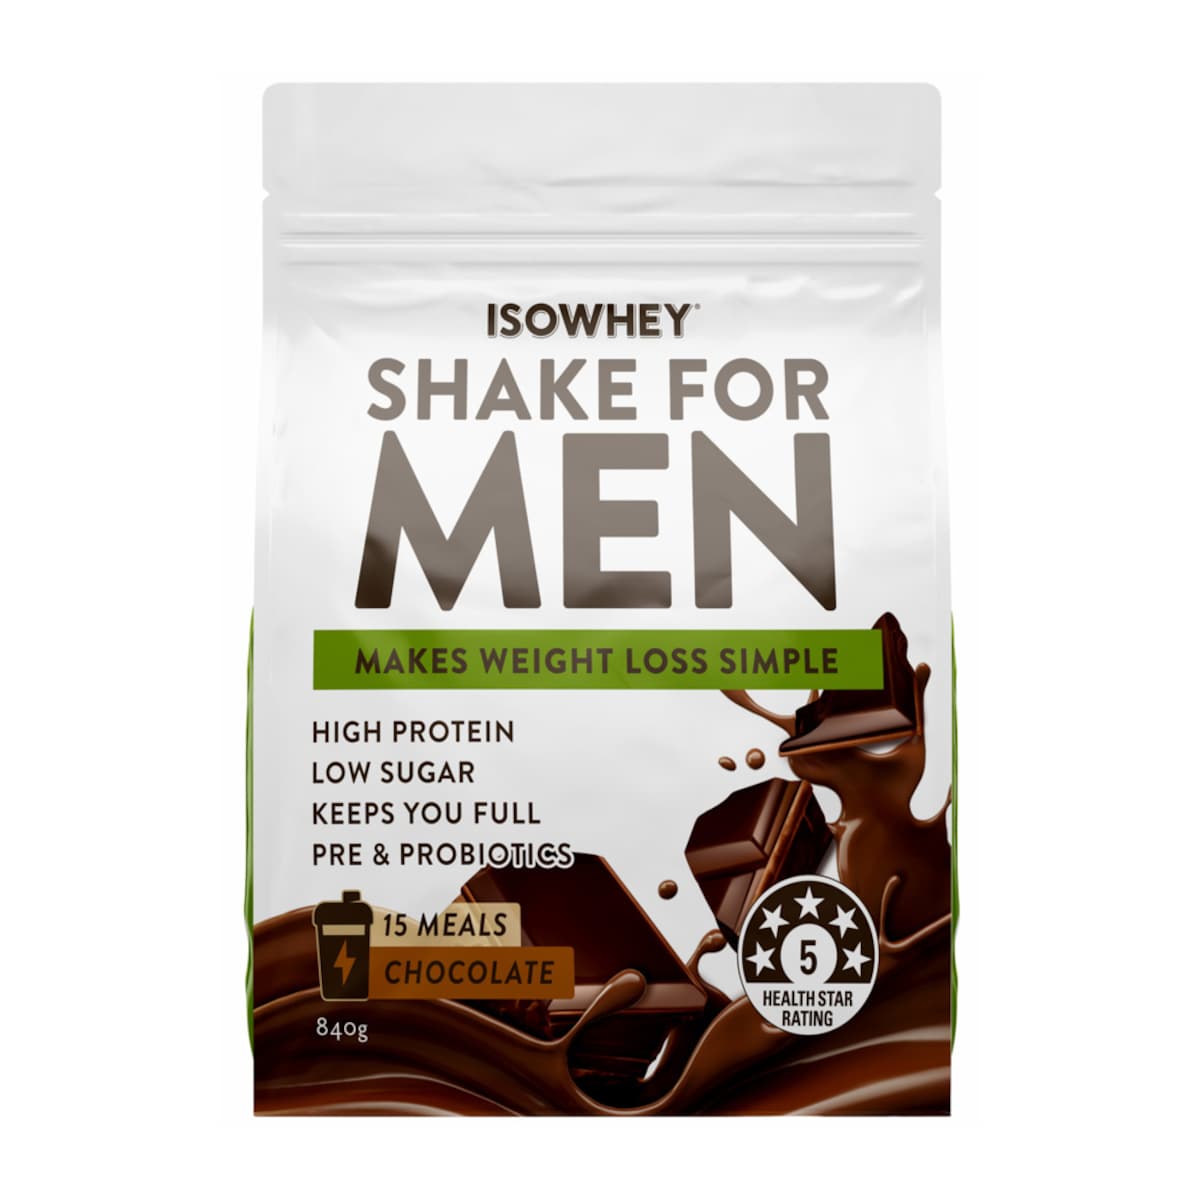 IsoWhey Men's Shake Chocolate 840g Australia